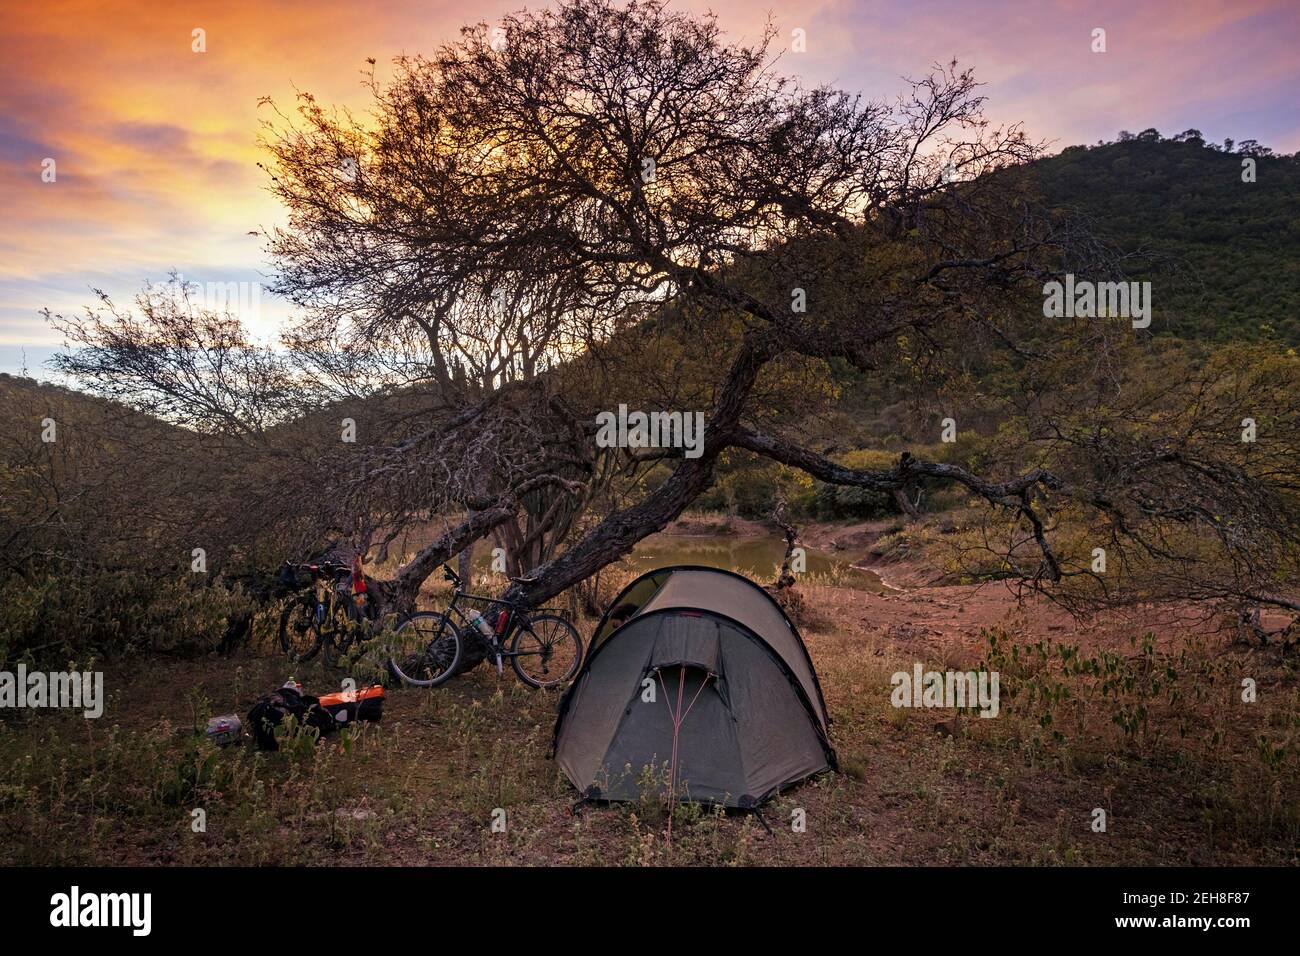 Camping salvaje con carpa de cúpula de trekking y dos bicicletas de excursionistas aventureros en el Altiplano / Meseta Andina en la Cordillera de los Andes, Bolivia Foto de stock